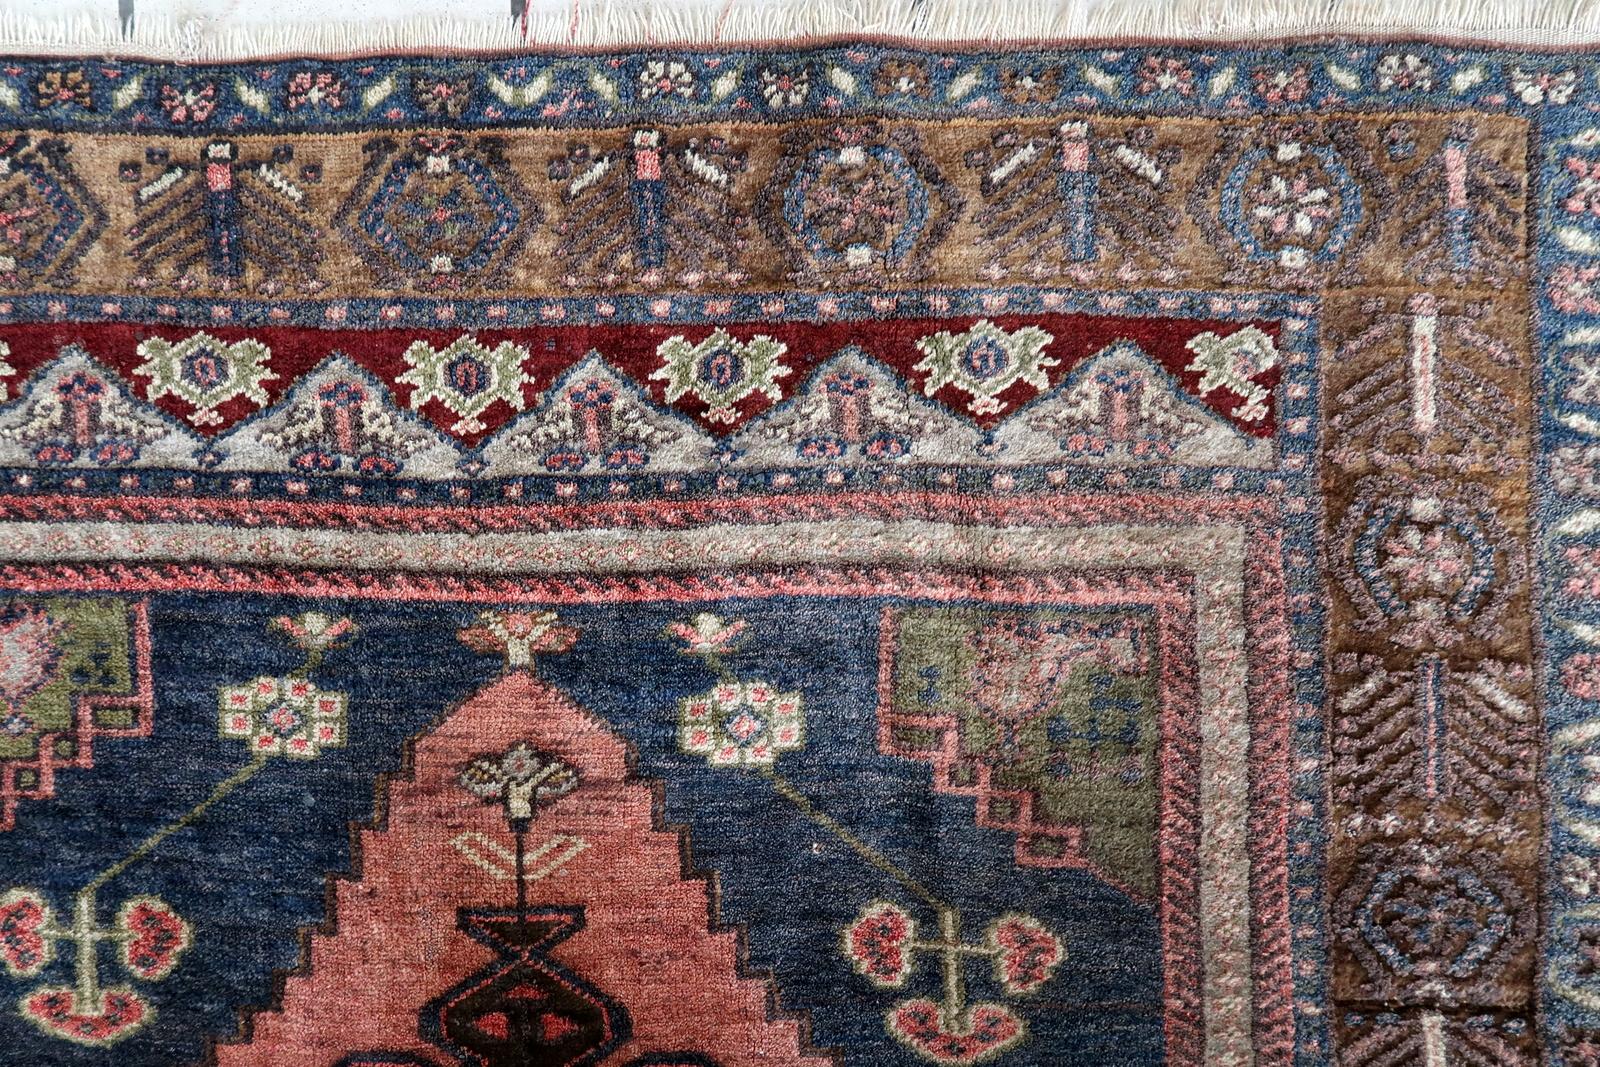 Verschönern Sie Ihren Wohnraum mit diesem handgefertigten türkisch-anatolischen Vintage-Teppich. Dieser in den 1970er Jahren gefertigte Teppich misst 3,7' x 5,6' (113cm x 173cm) und ist in gutem Originalzustand. Der aus hochwertiger Wolle gefertigte